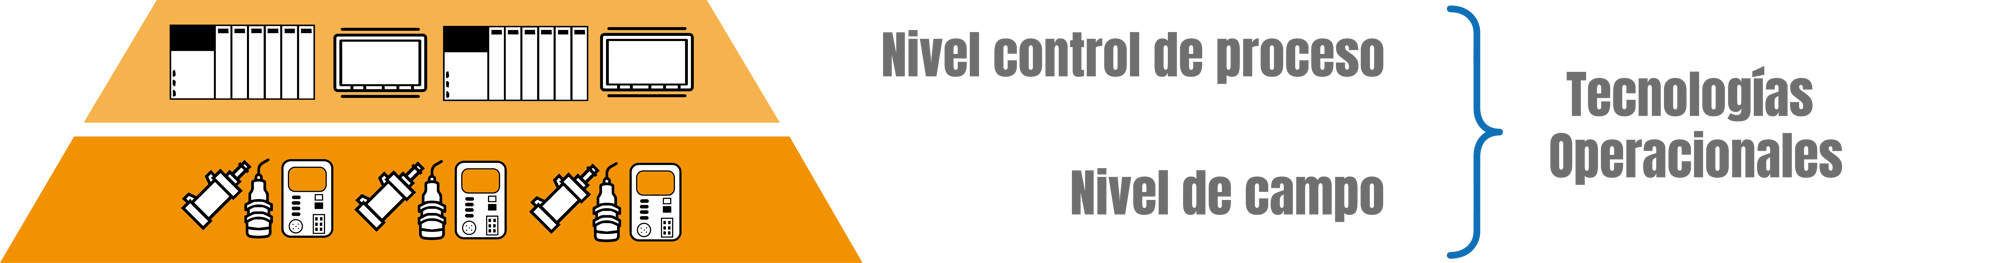 Nivel-control-de-proceso-y-campo